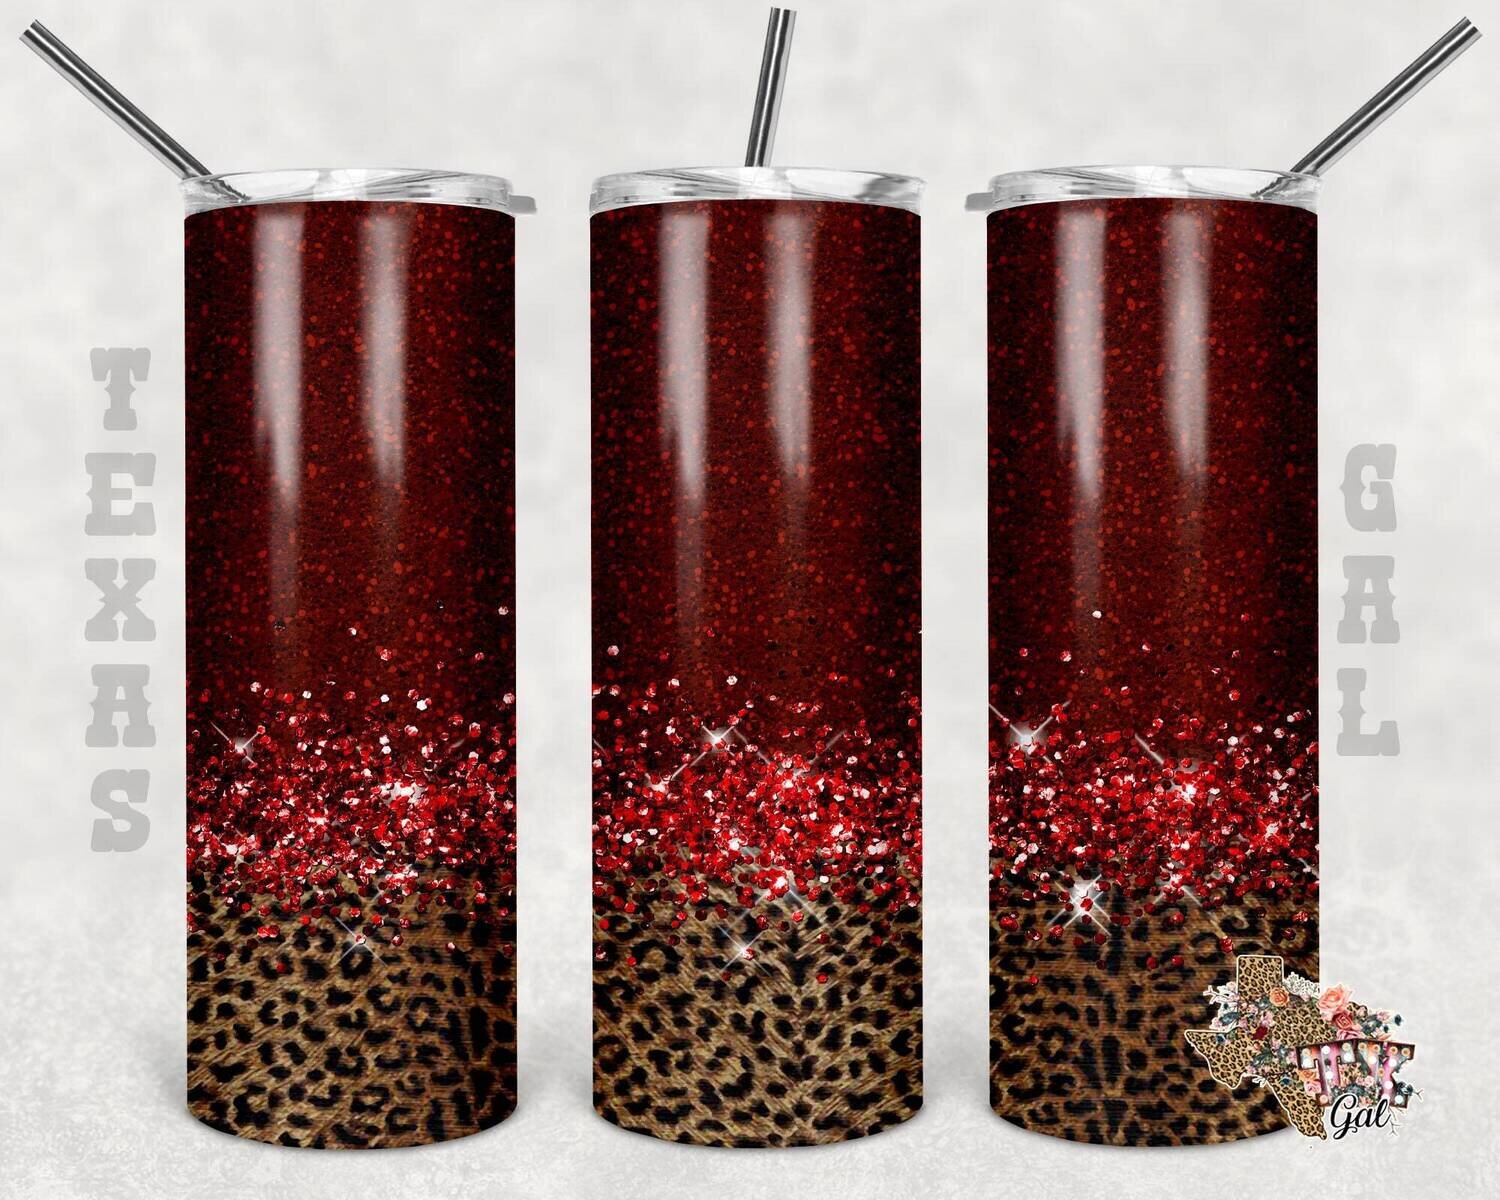 20 oz Skinny Tumbler Red Glitter Leopard Sublimation Design PNG Instant DIGITAL ONLY